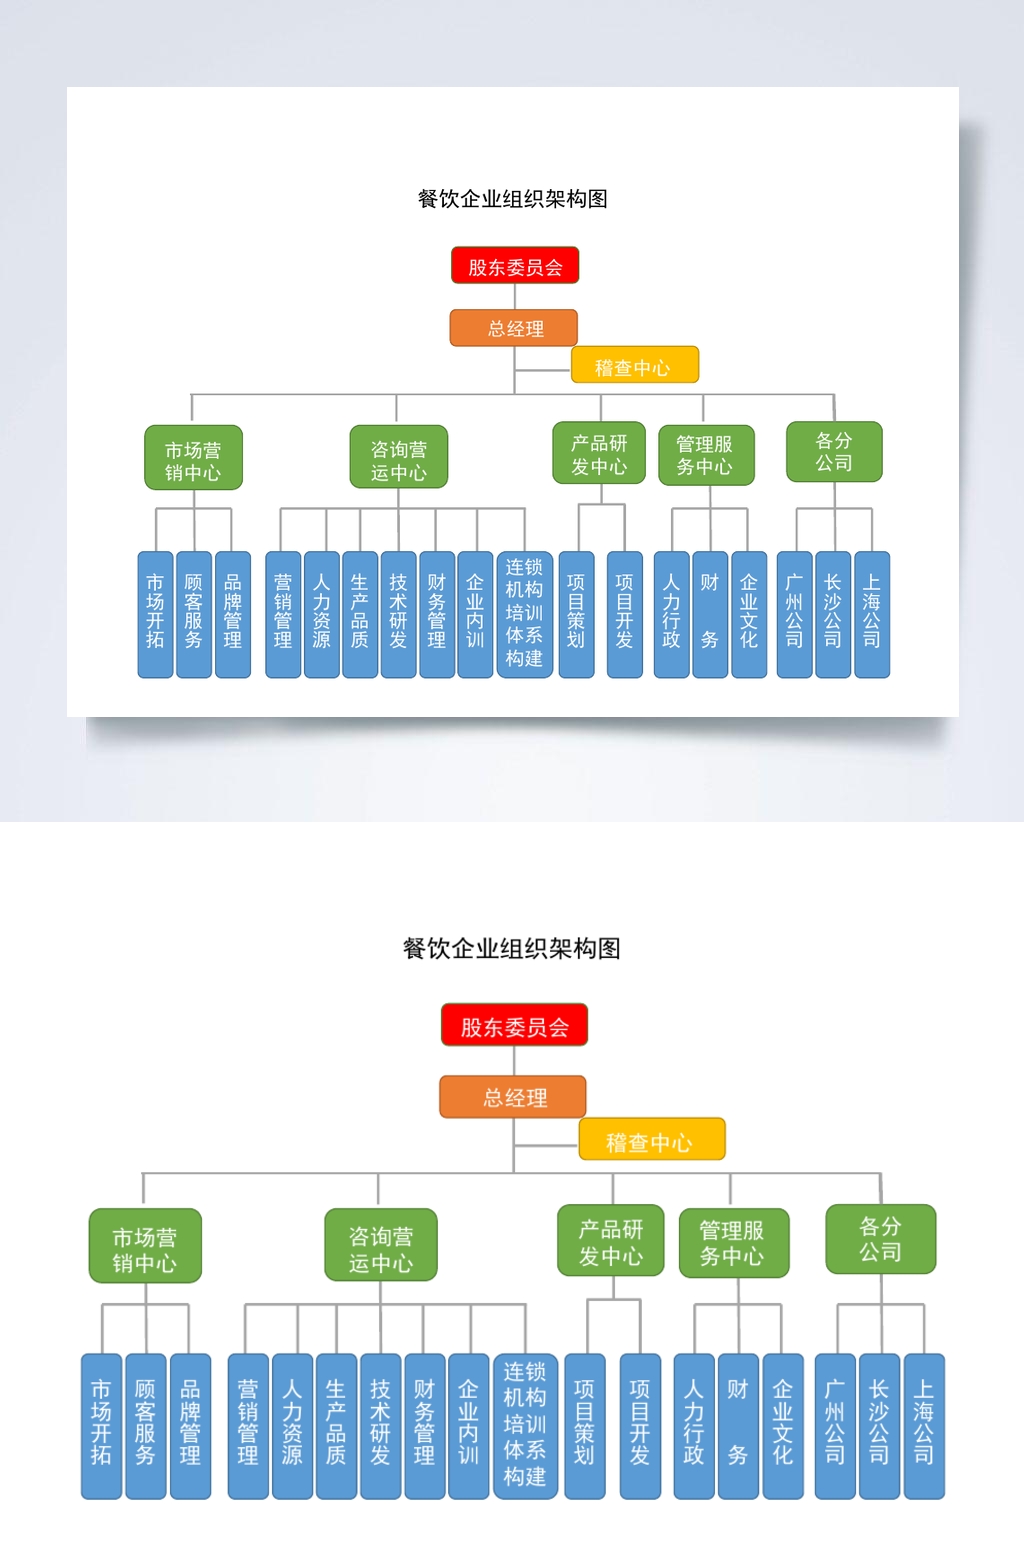 火锅店企业组织结构图图片